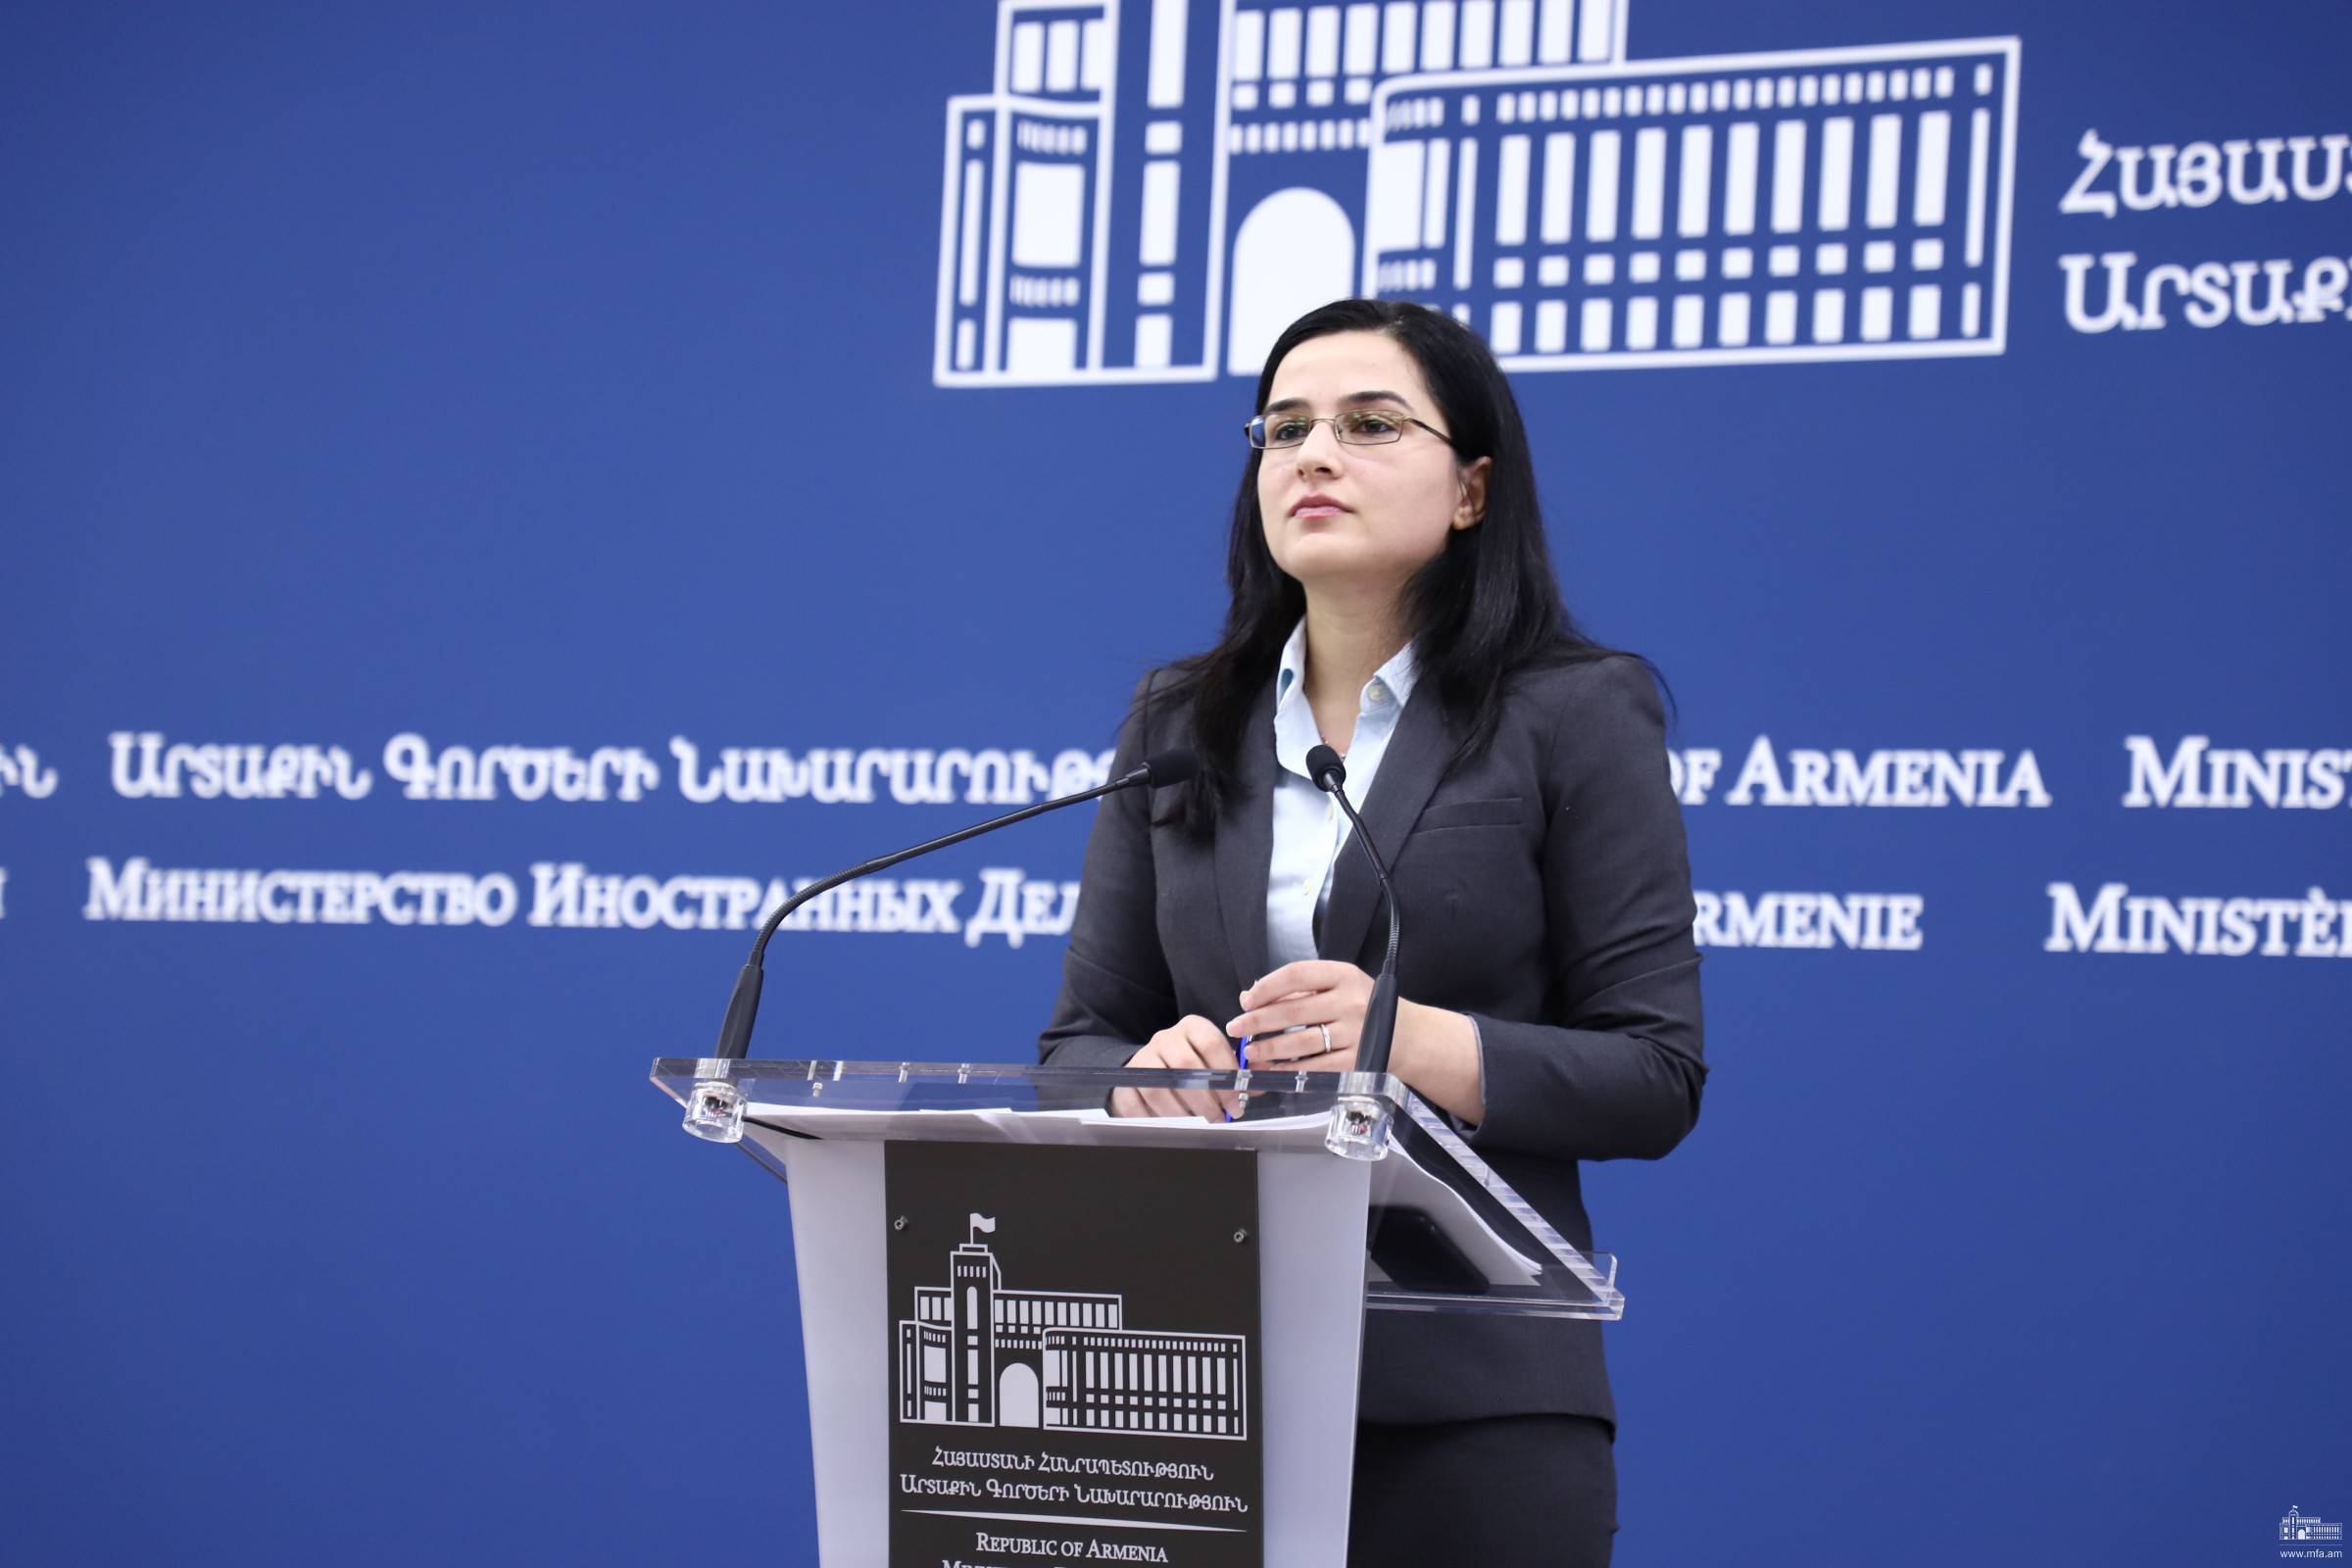 Ermenistan Dışişleri Bakanlığı'ndan Bakü Ermenilerine uygulanan katliamlarına dair açıklama